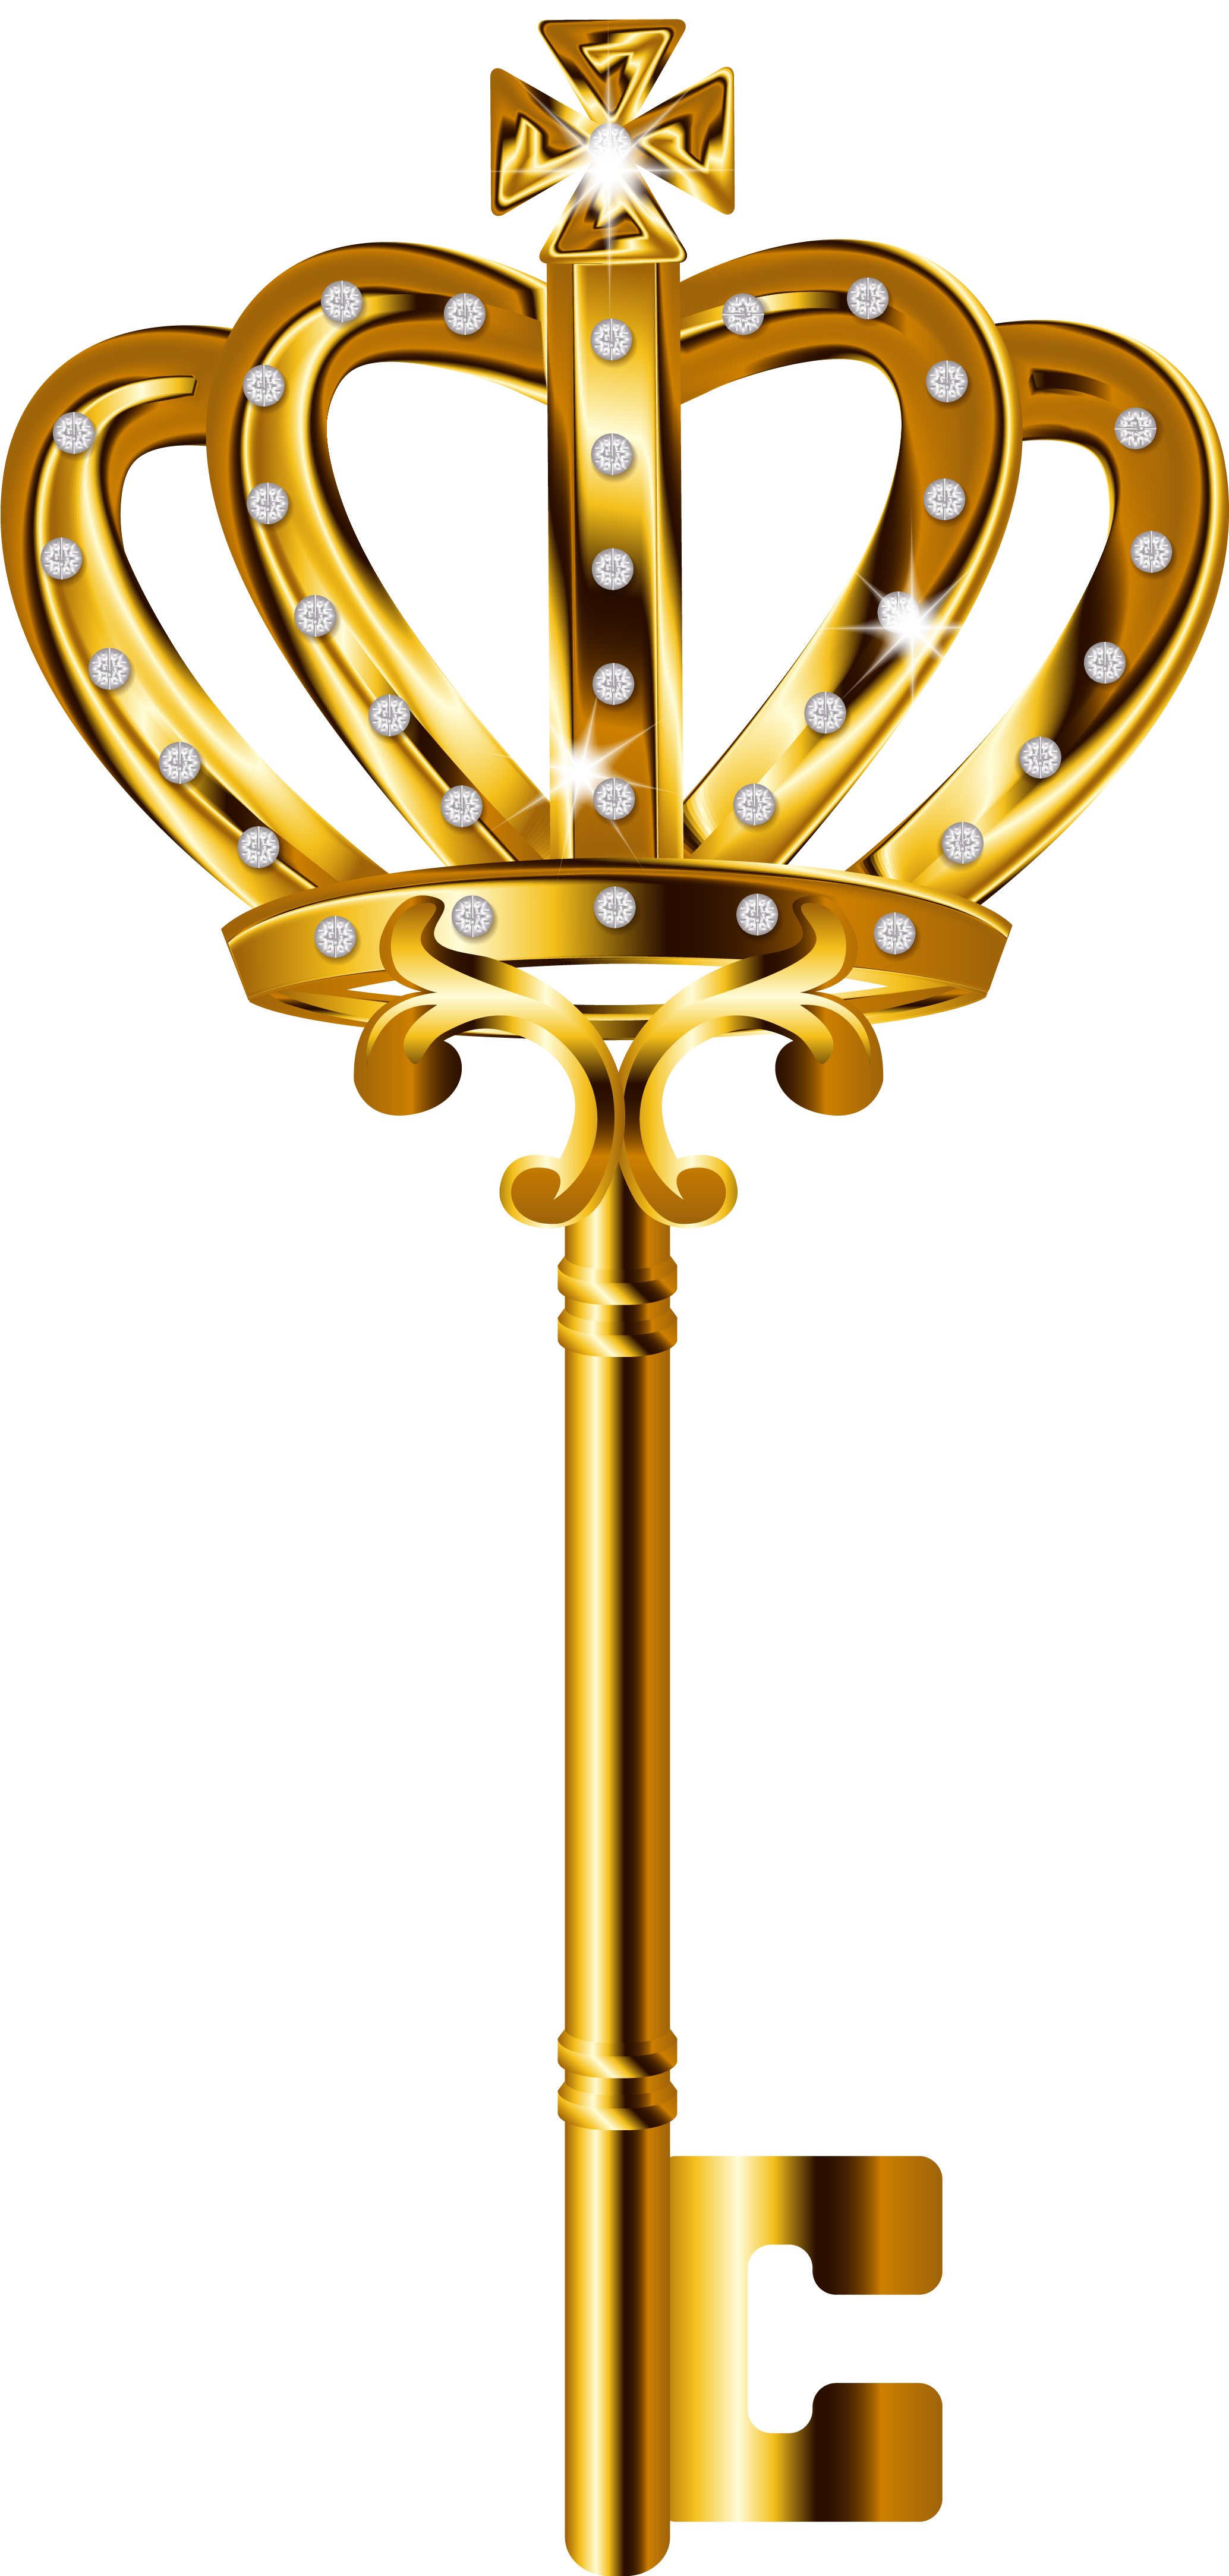 Golden Key PNG Image